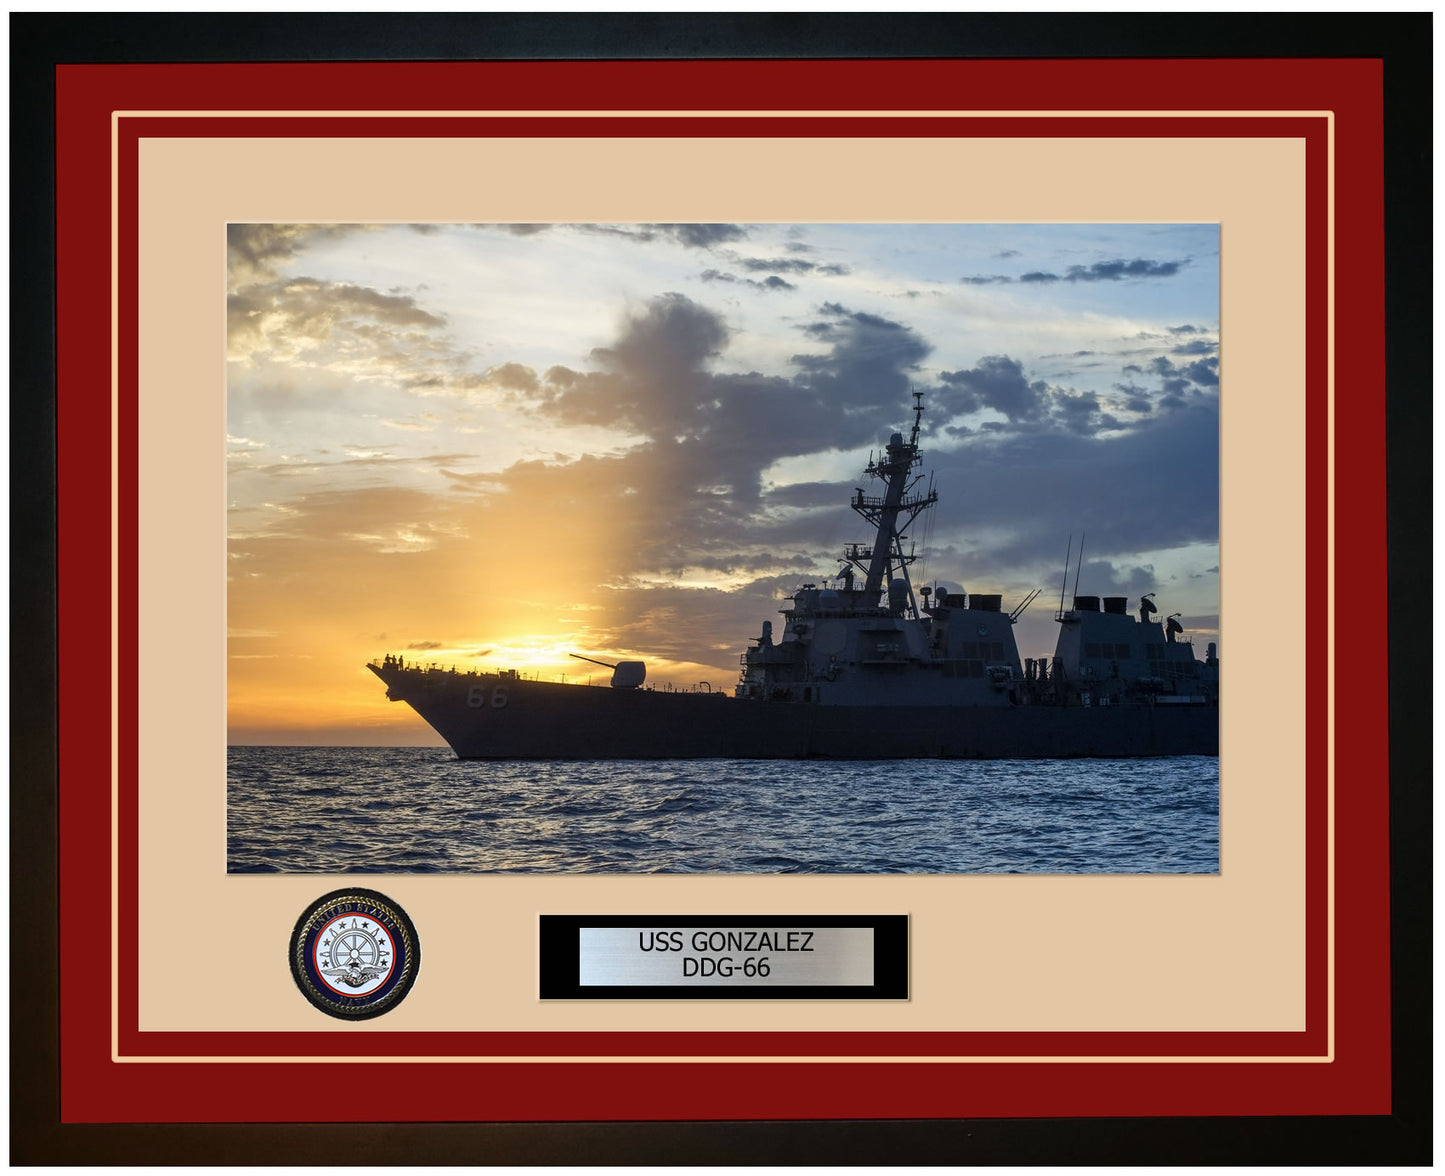 USS GONZALEZ DDG-66 Framed Navy Ship Photo Burgundy